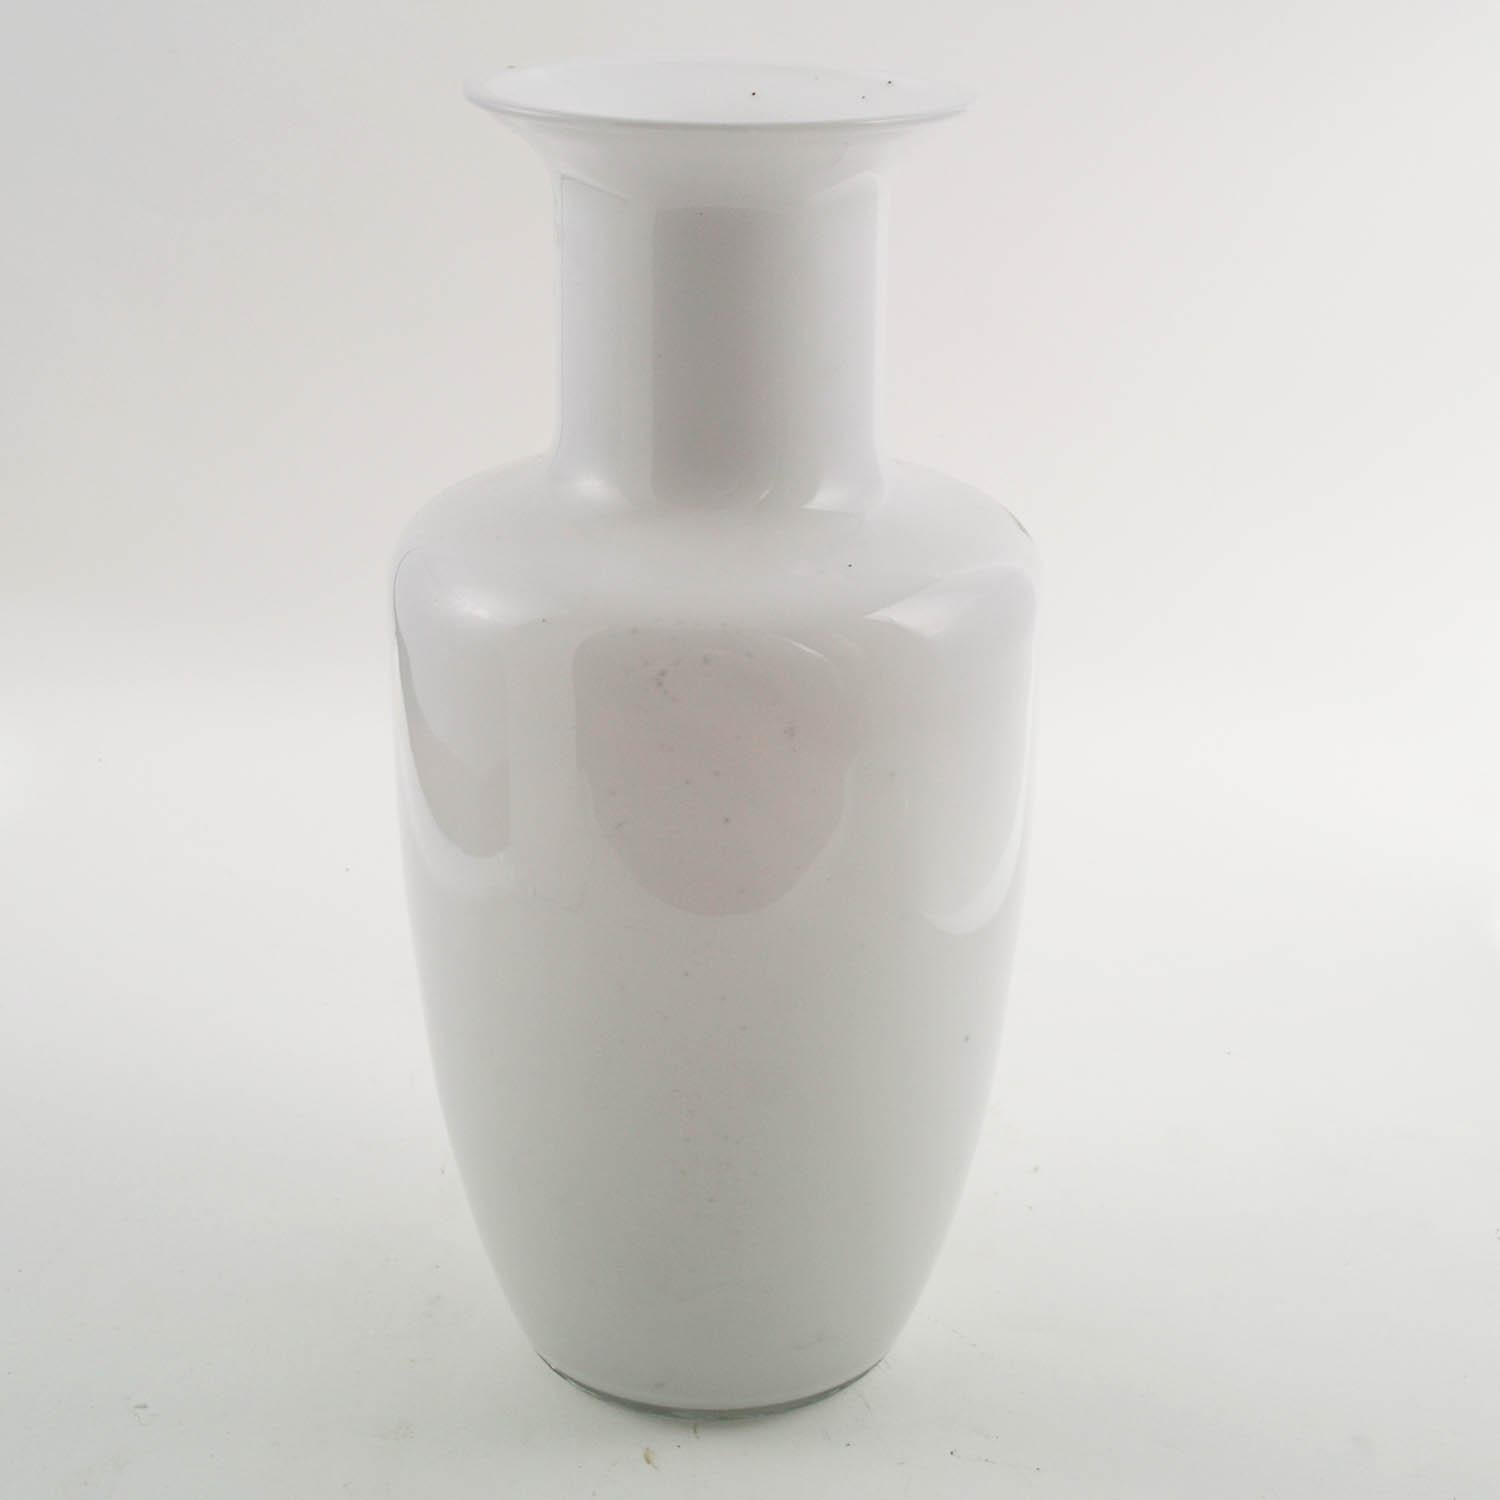 Moderne Murano-Vase aus der Jahrhundertmitte, Tapio Wirkkala für Venini zugeschrieben, verziert mit Murano-Gitterglas

Über:
Entworfen im Jahr 1968 von Tapio Wirkkala, sind diese Flaschen aus dem ähnlichen Formen sanft geschwungenen Glas (lattimo